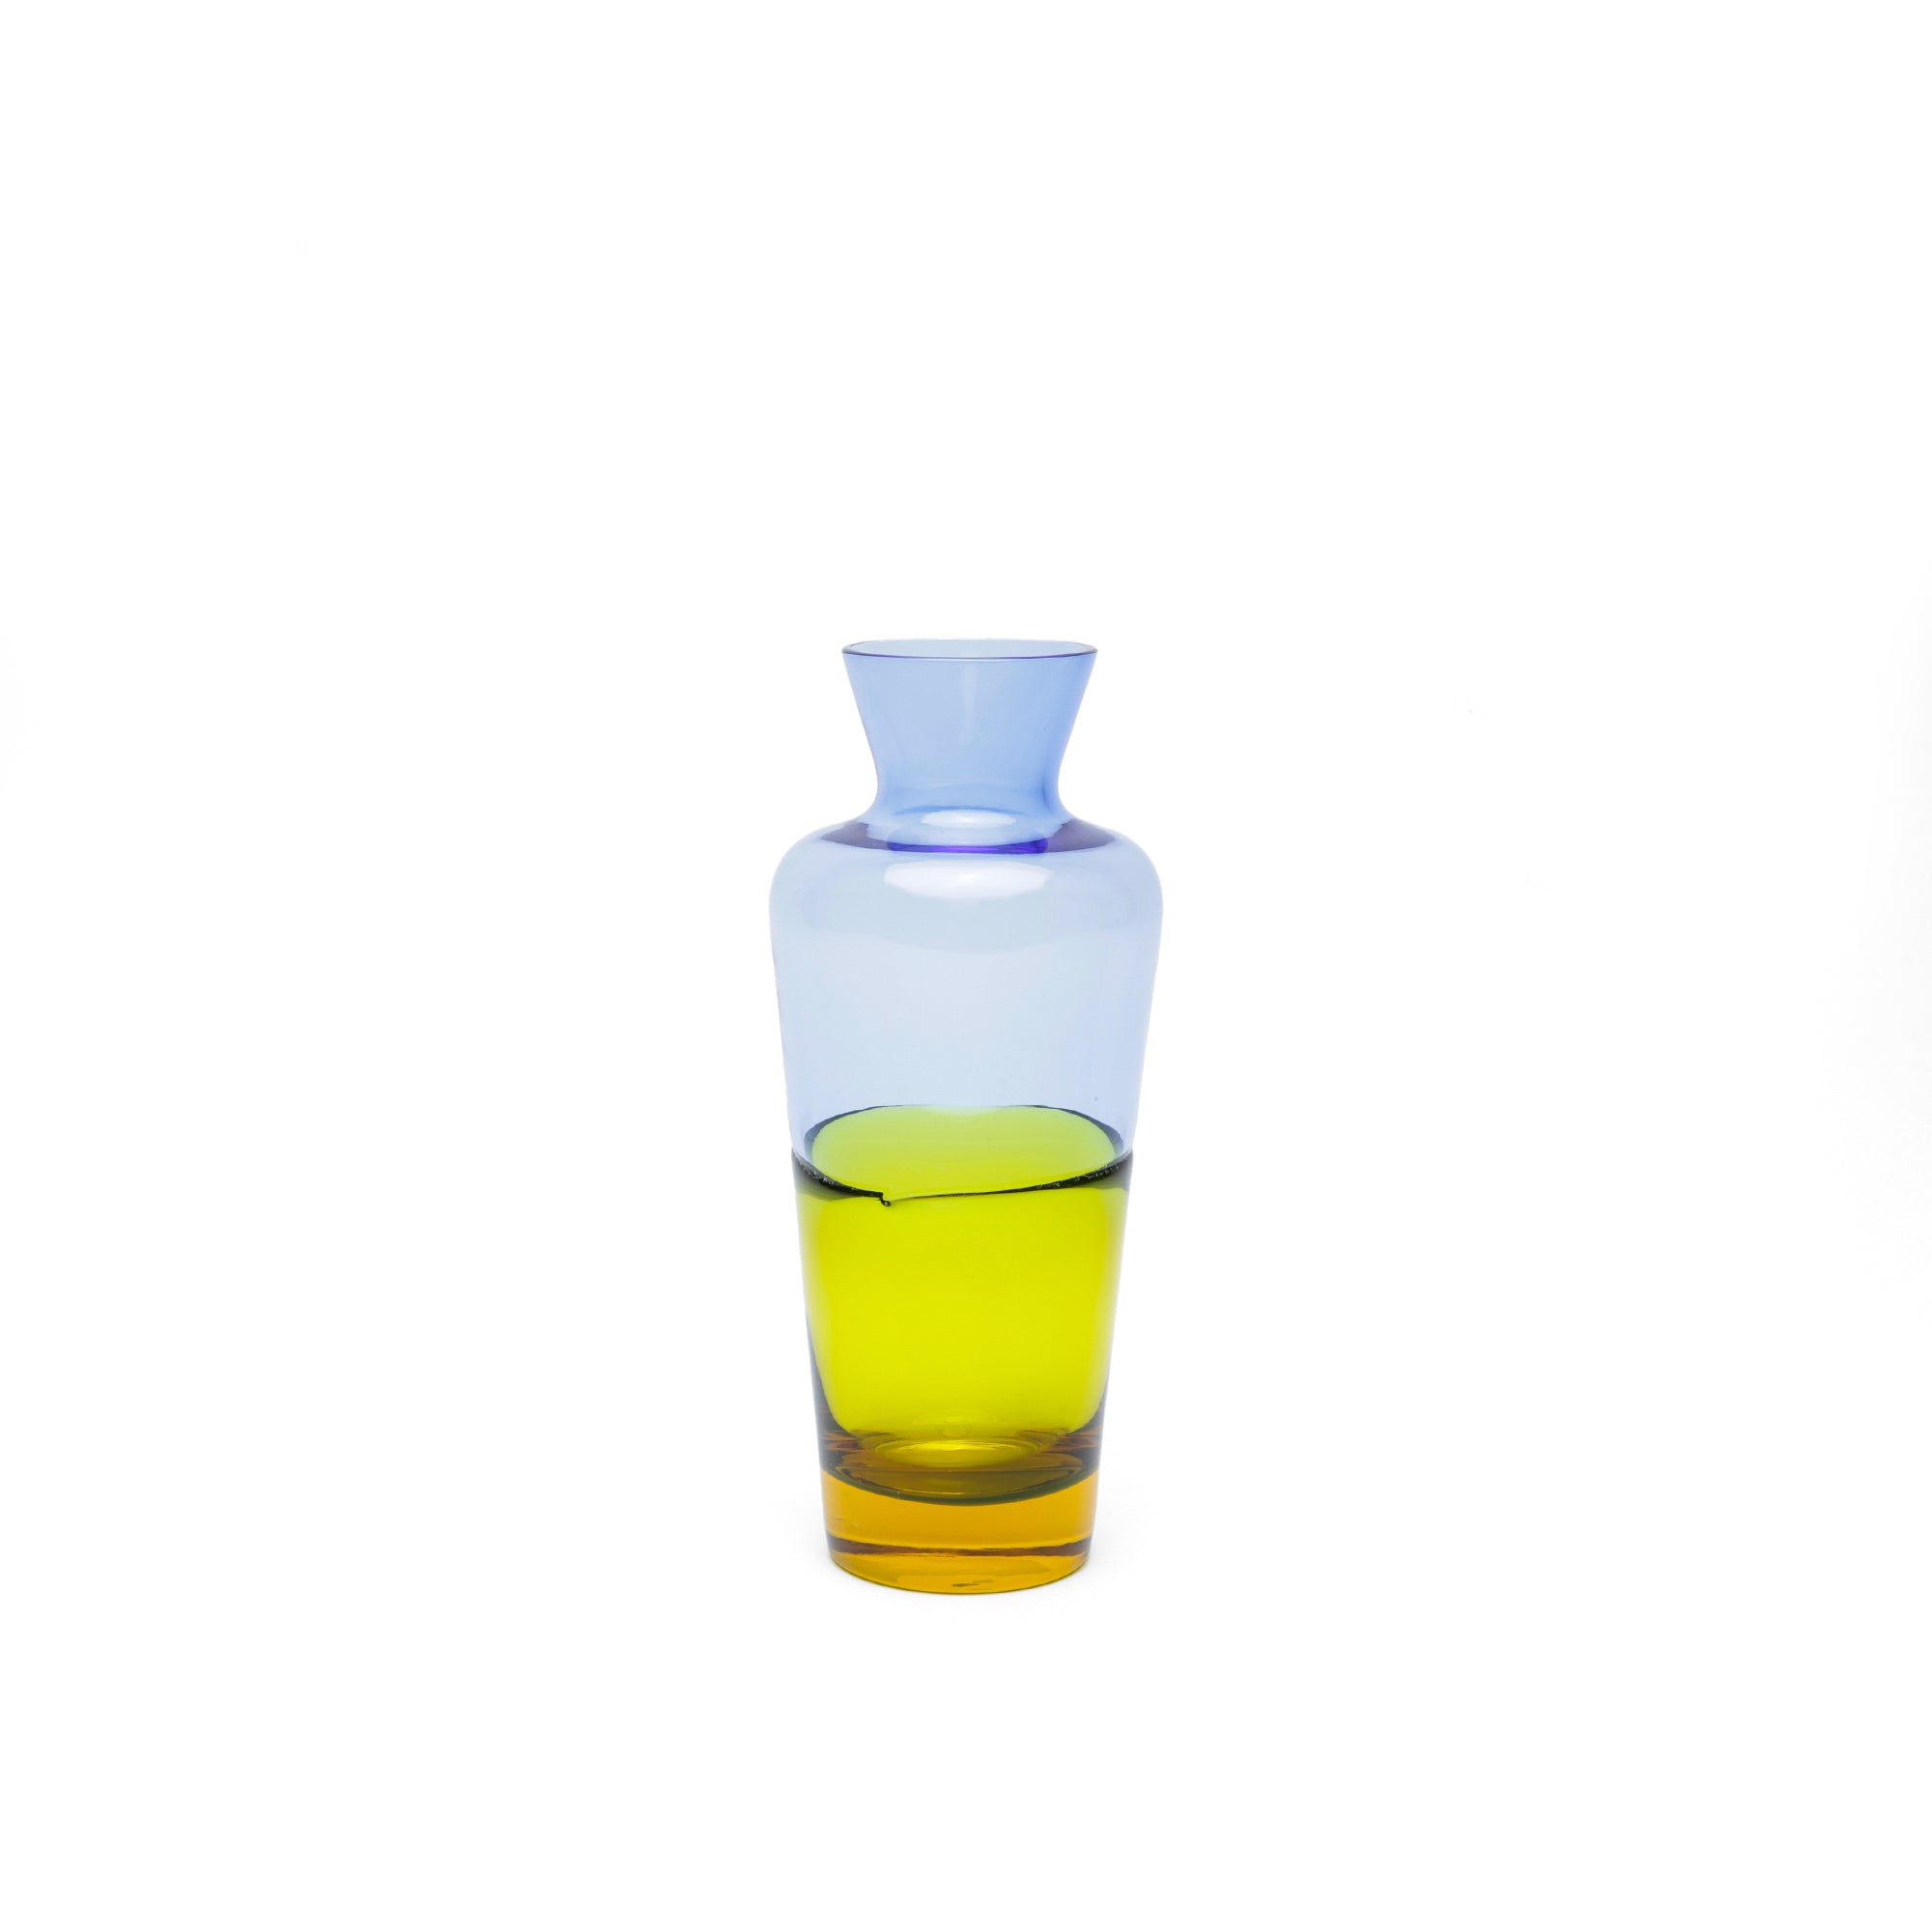 Duo Tone Blue + Yellow Sake Bottle